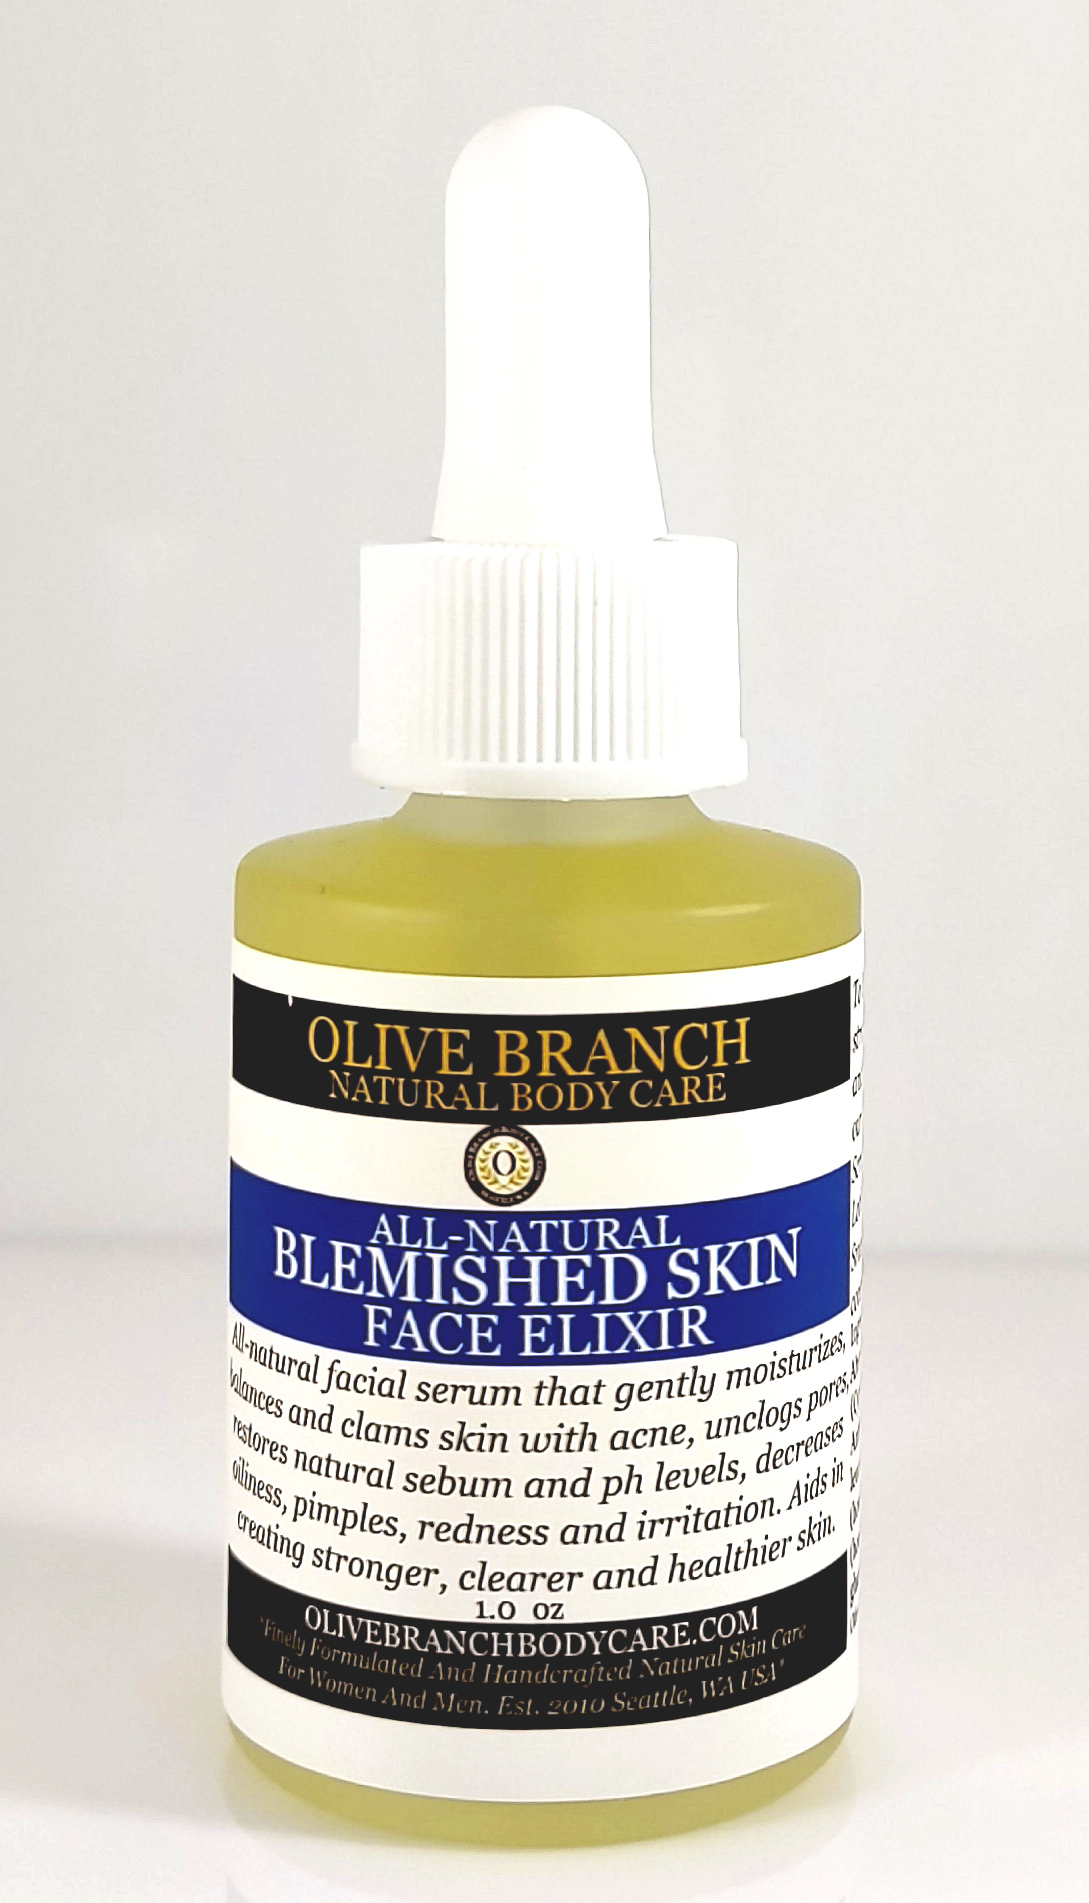 All-Natural Blemished Skin Face Elixir (serum)